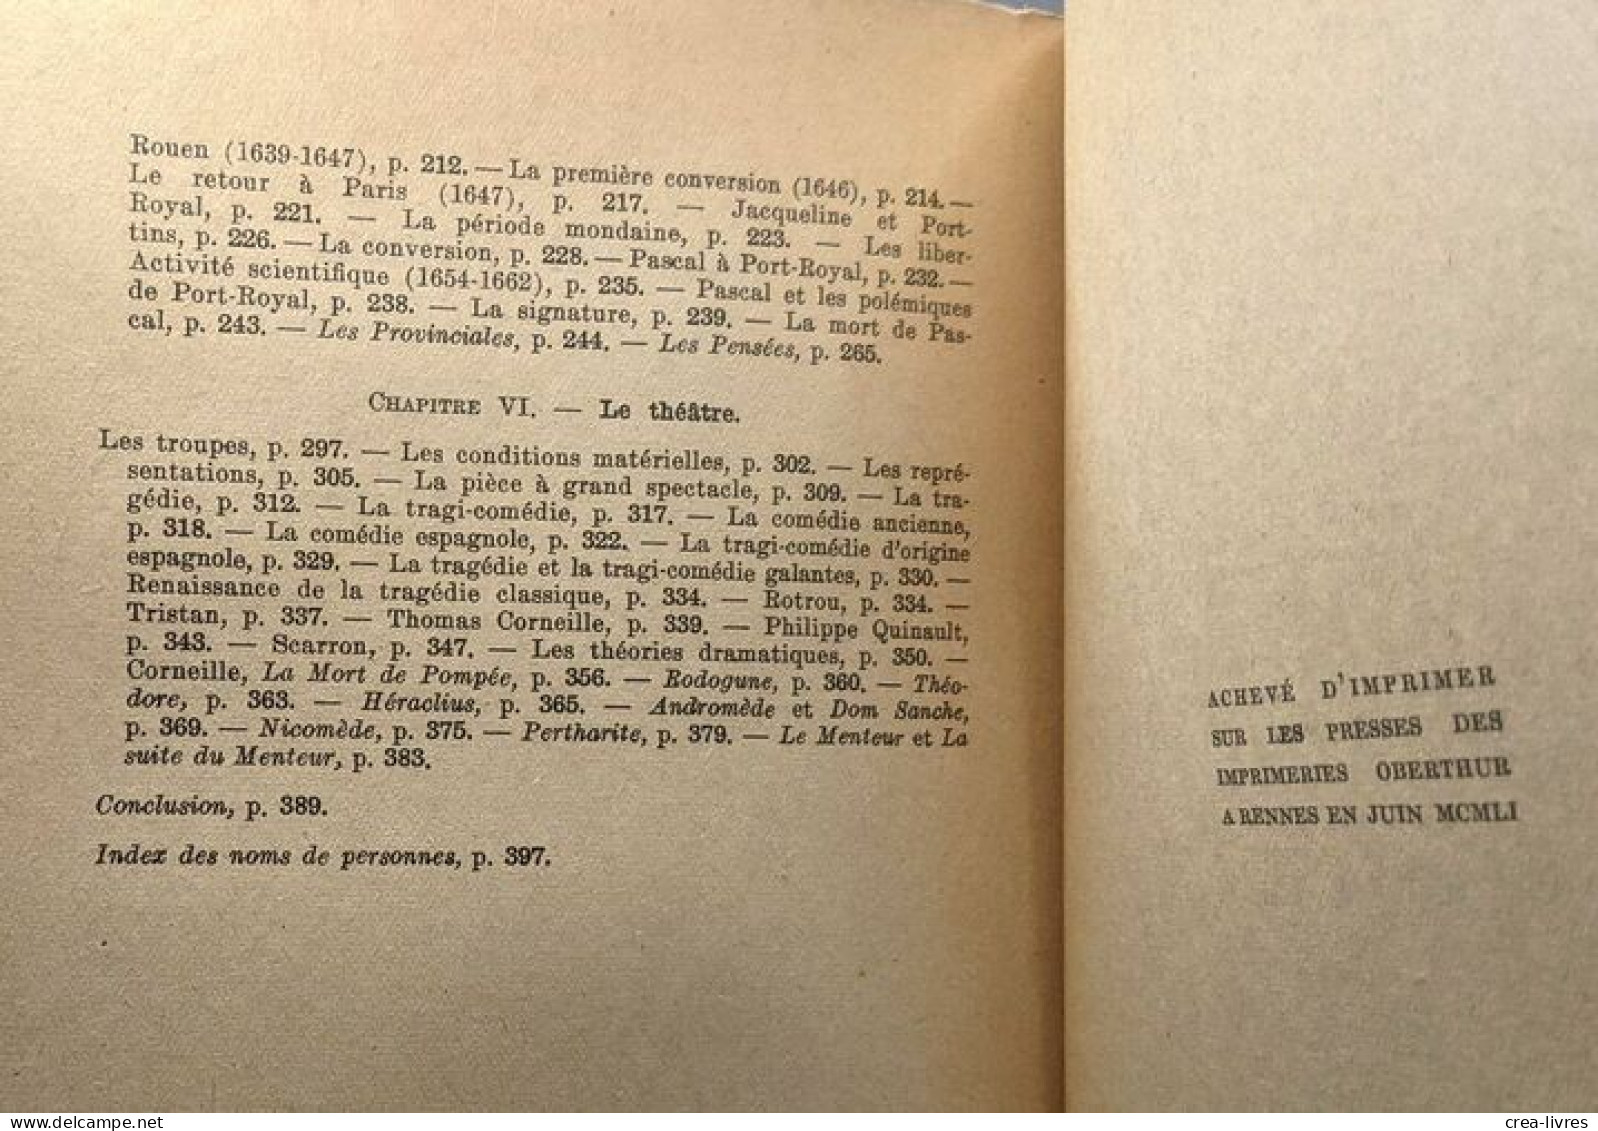 Histoire de la Littérature Française au XVIIe Siècle - Tome I - L'époque d'Henri IV et de Louis XIII (1953) + Tome II -